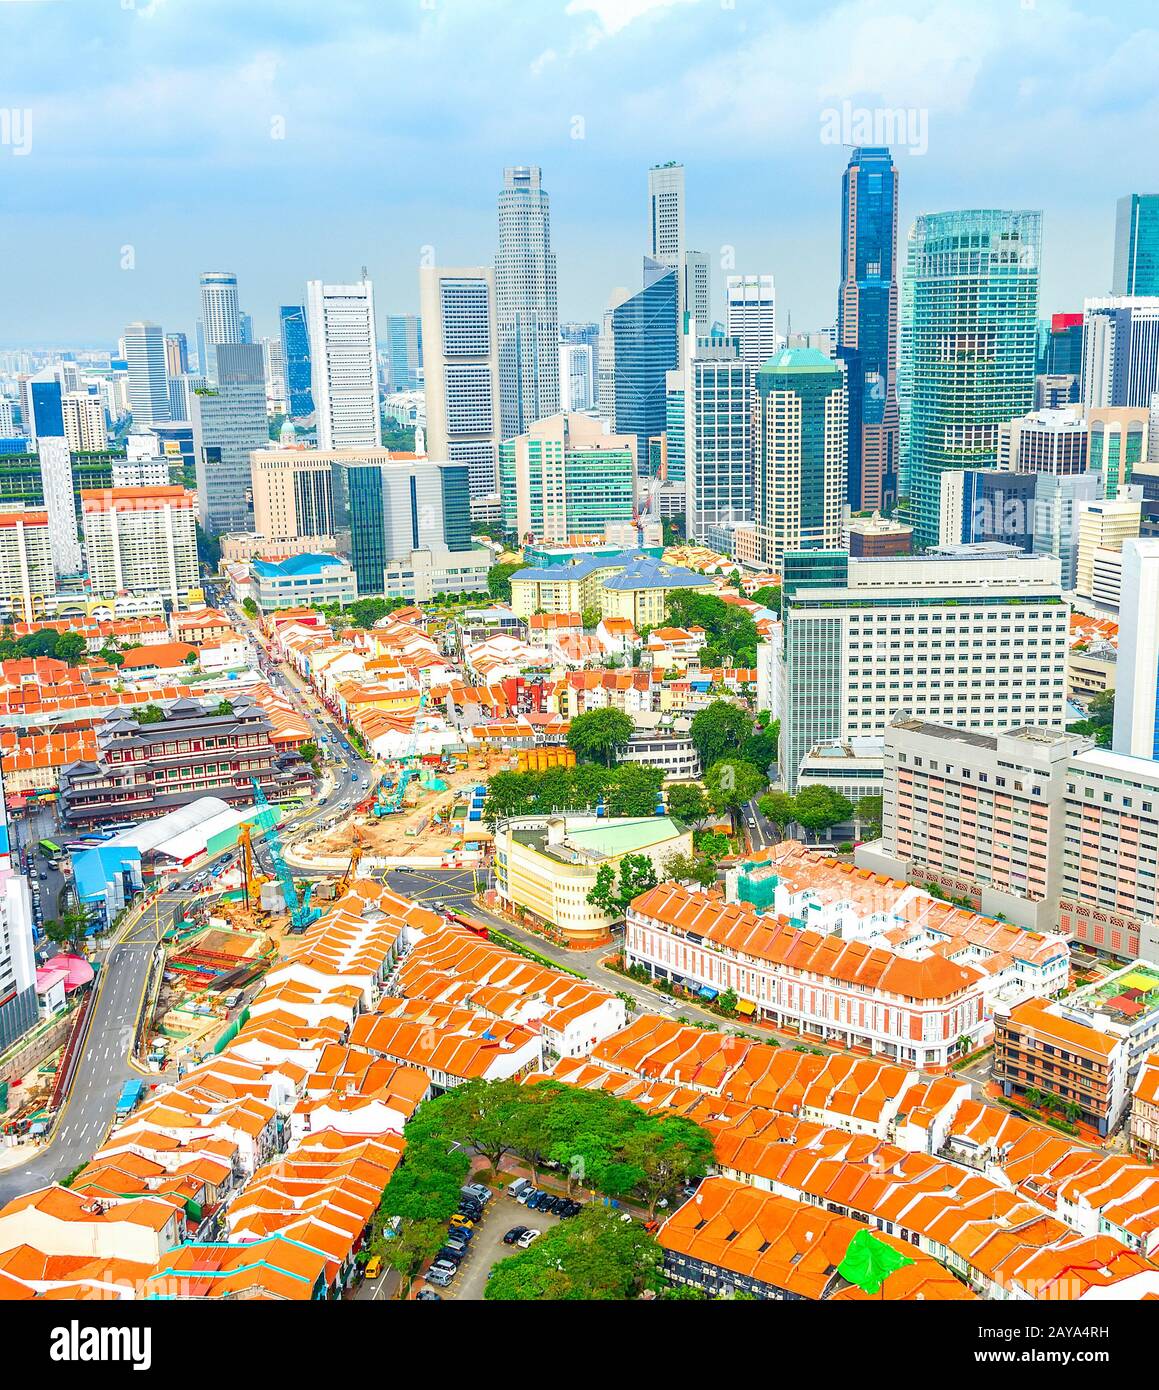 Singapore Downtown, Chinatown aerila view Stock Photo